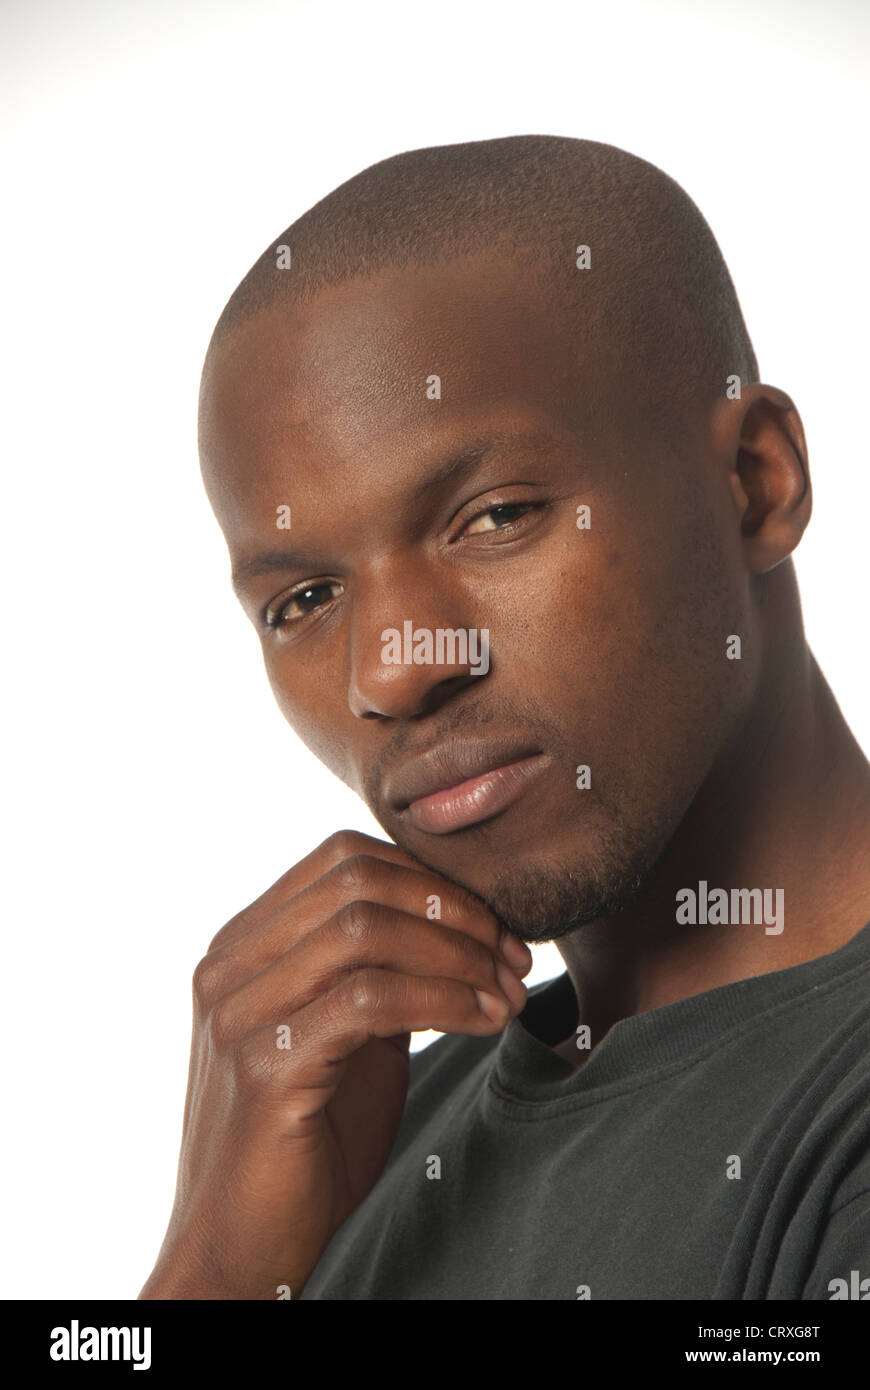 L'uomo africano con la testa rasata nel profondo del pensiero Foto Stock